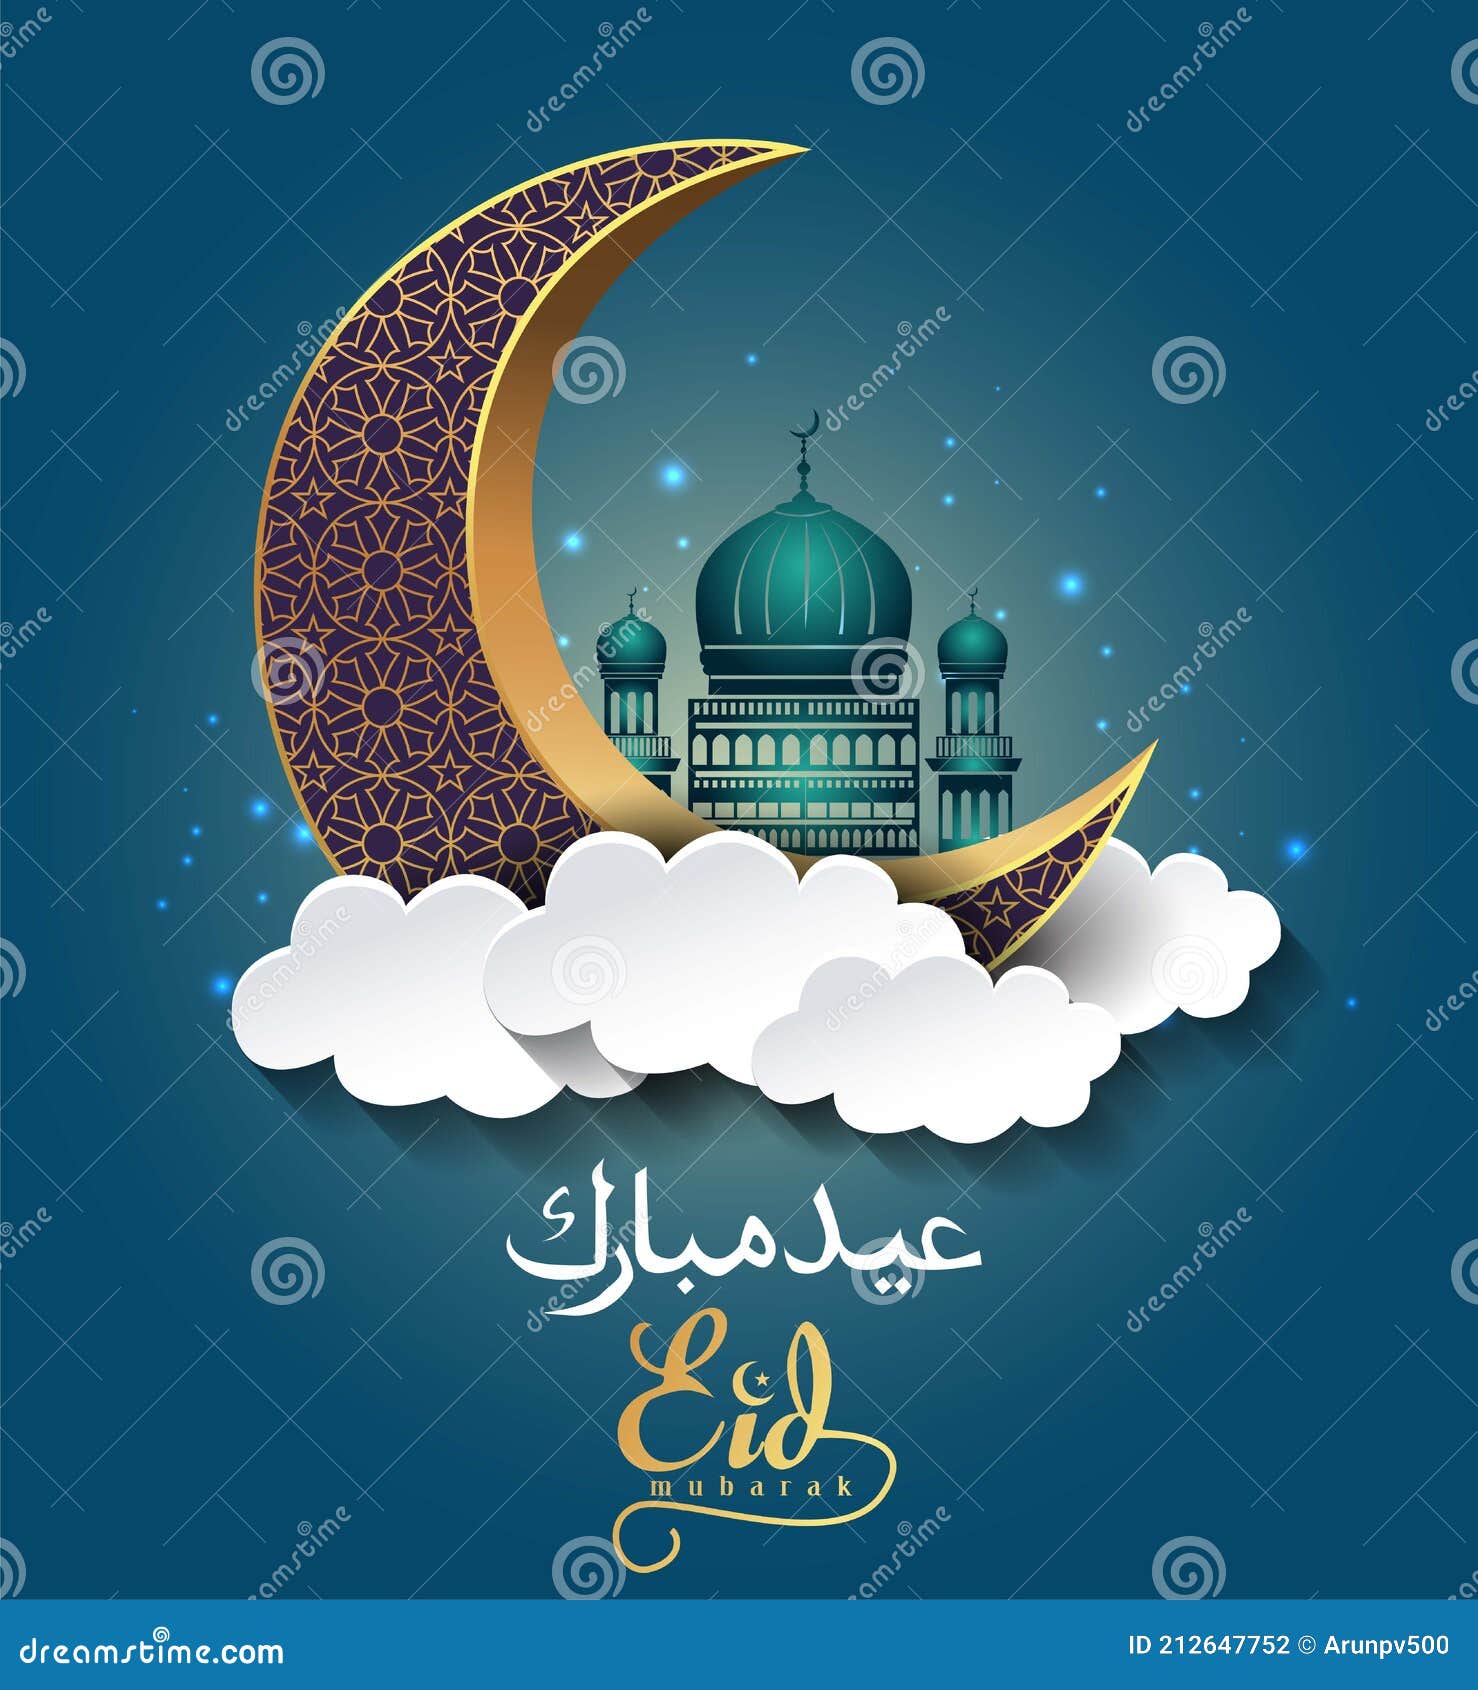 Hãy là chủ nhân của thiết kế nền chúc mừng Eid Mubarak vectơ độc đáo của bạn. Tạo ra một món quà ý nghĩa và đầy tình yêu với những nụ cười tràn đầy hạnh phúc. Cùng đến để khám phá những điều tuyệt vời trong thiết kế nền chúc mừng Eid Mubarak vectơ này nhé!